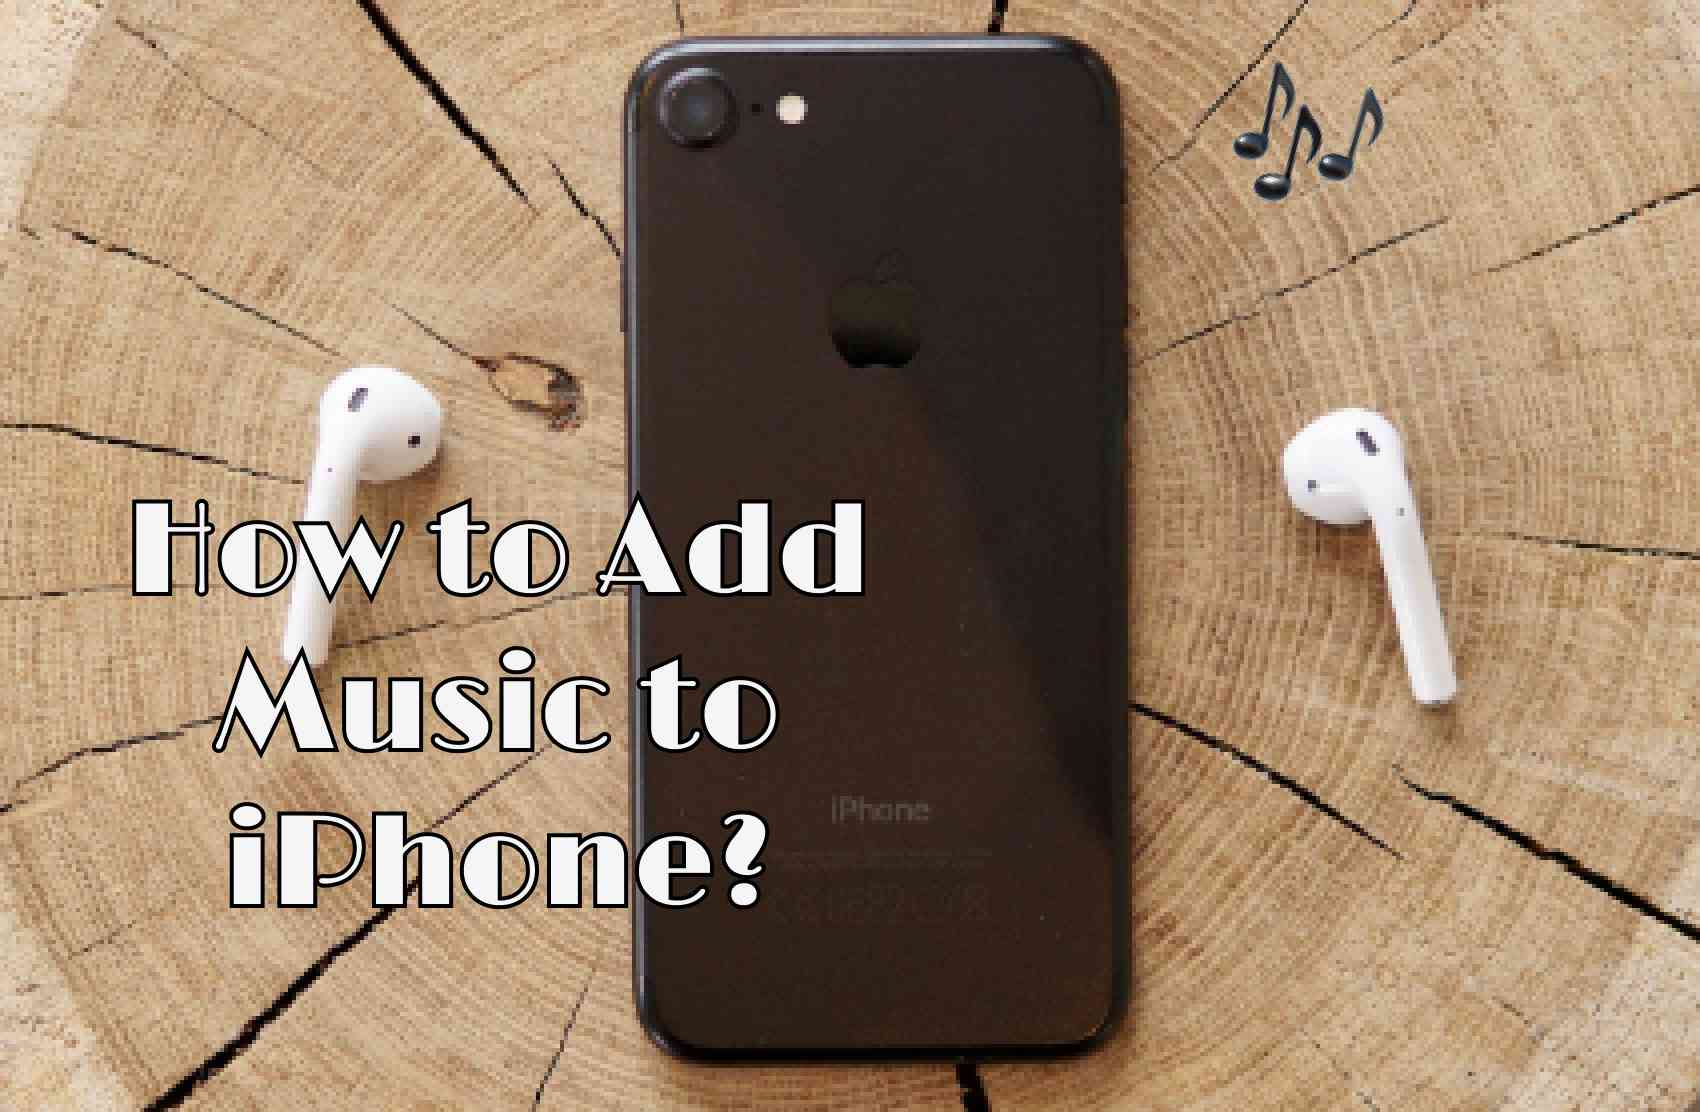 Como adicionar música ao iPhone: Passos fáceis (5 métodos)